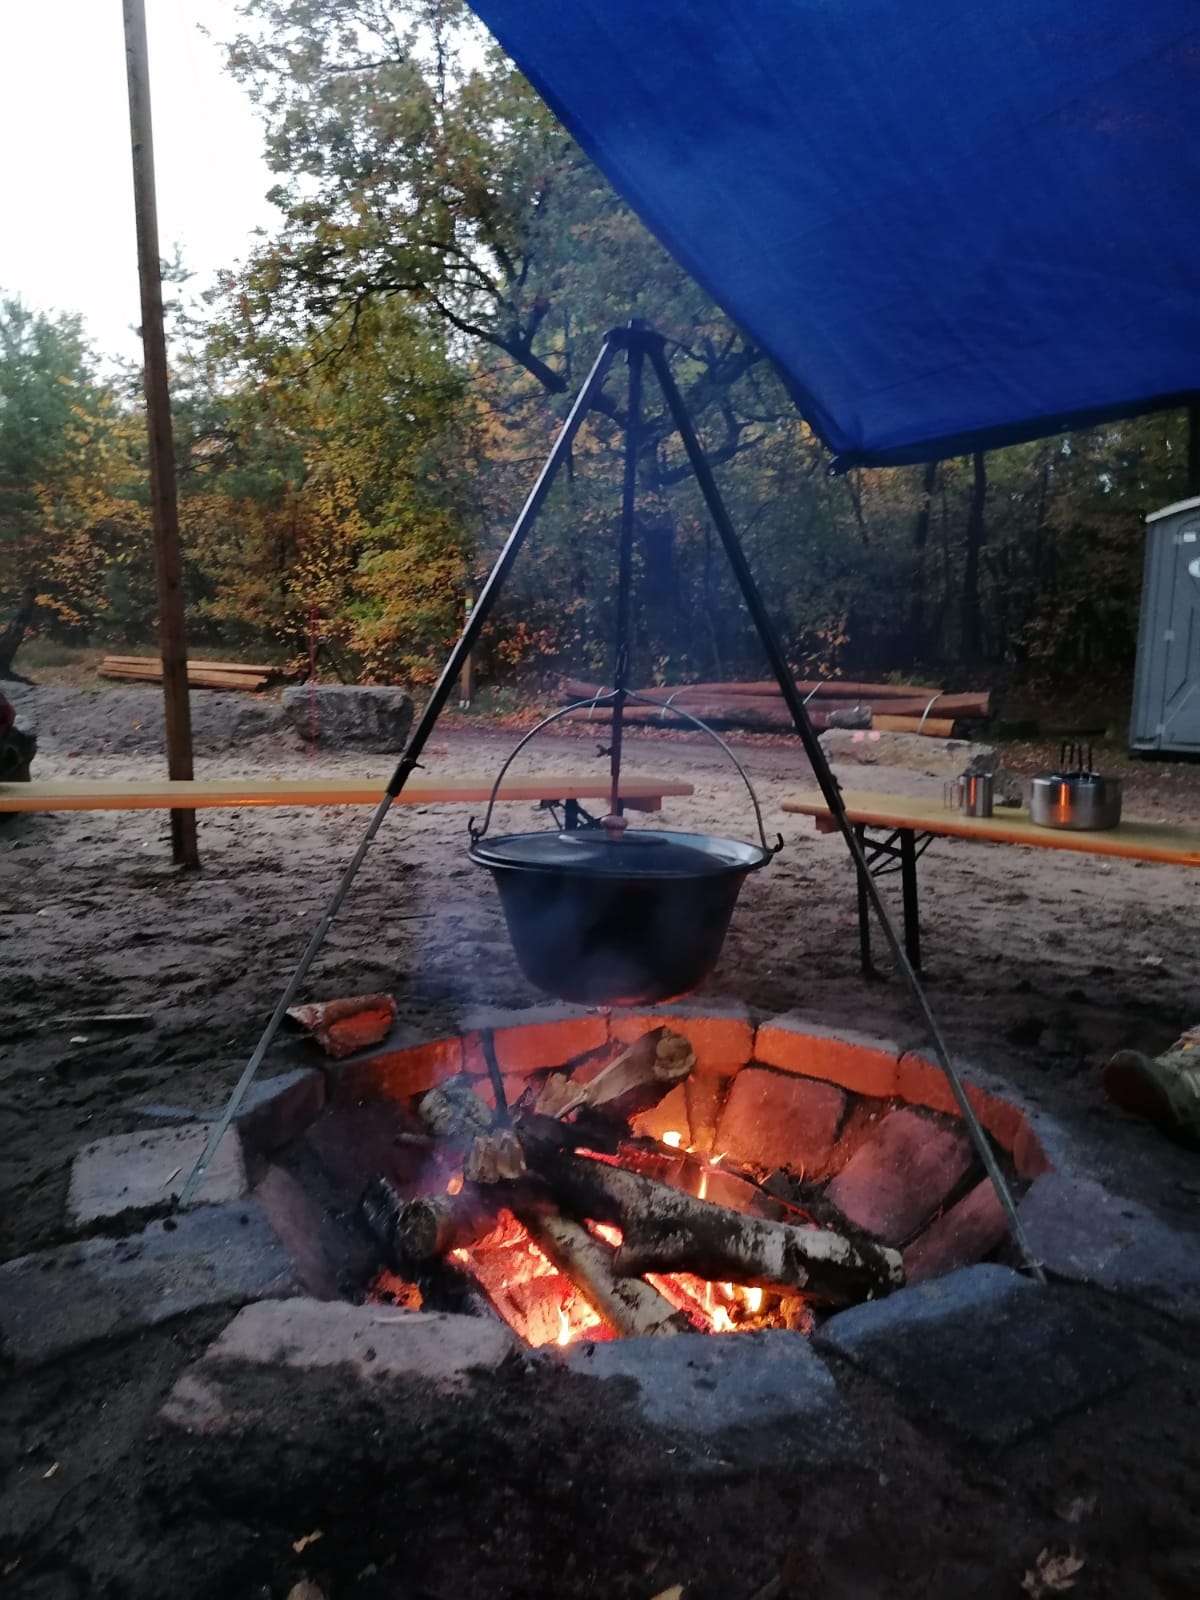 Dunkler großer Topf mit Deckel häng an einem Gerüst über einem Lagerfeuer. Im Hintergrund sind Holzbänke und rechts oben ein blauer Sonnenschutz.